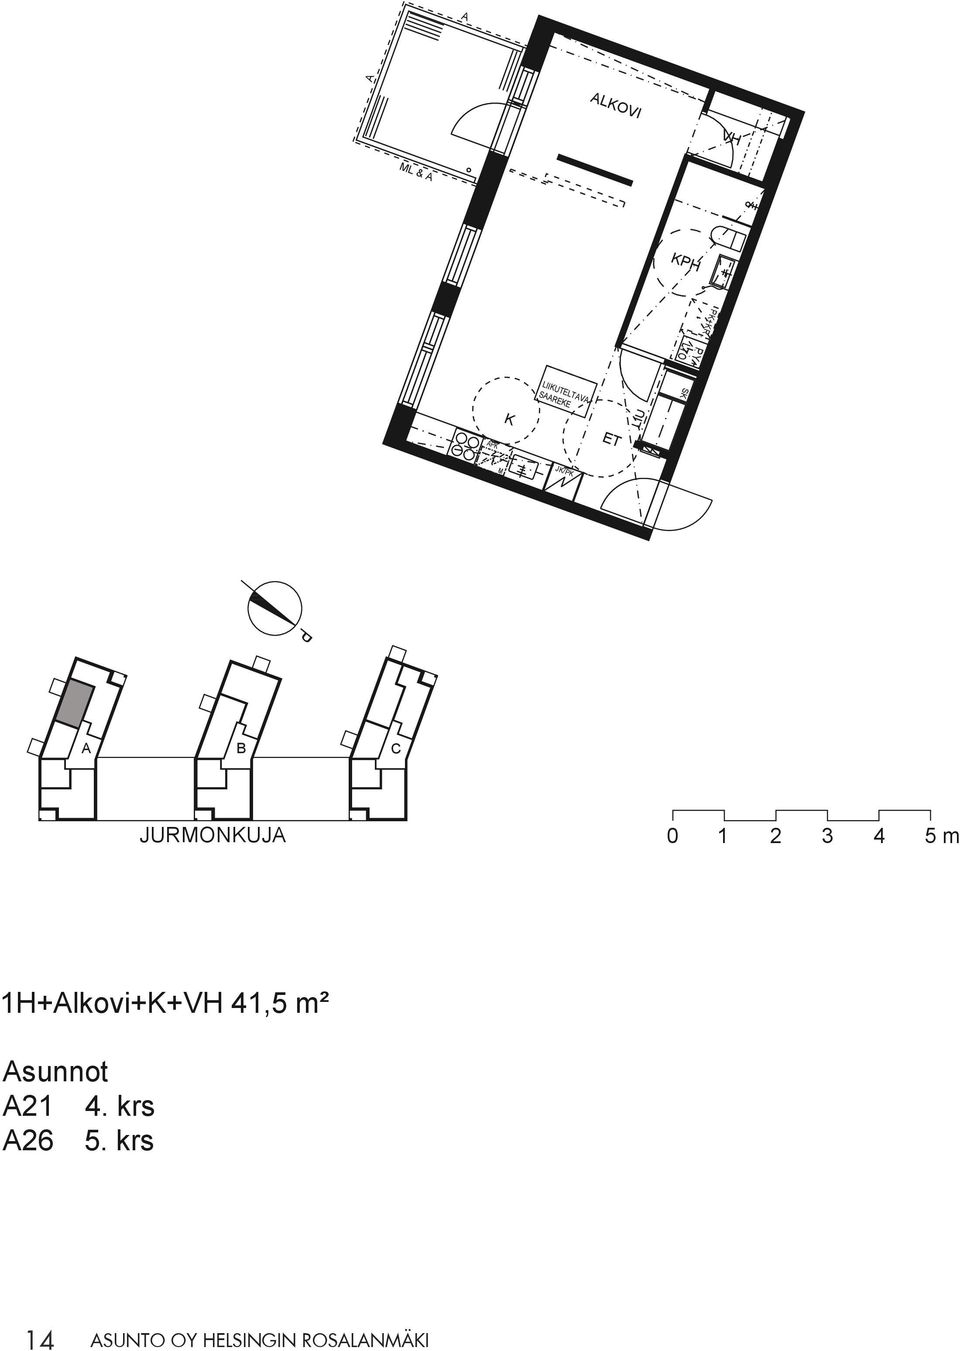 1H+lkovi+K+VH 41,5 m² sunnot 21 4.